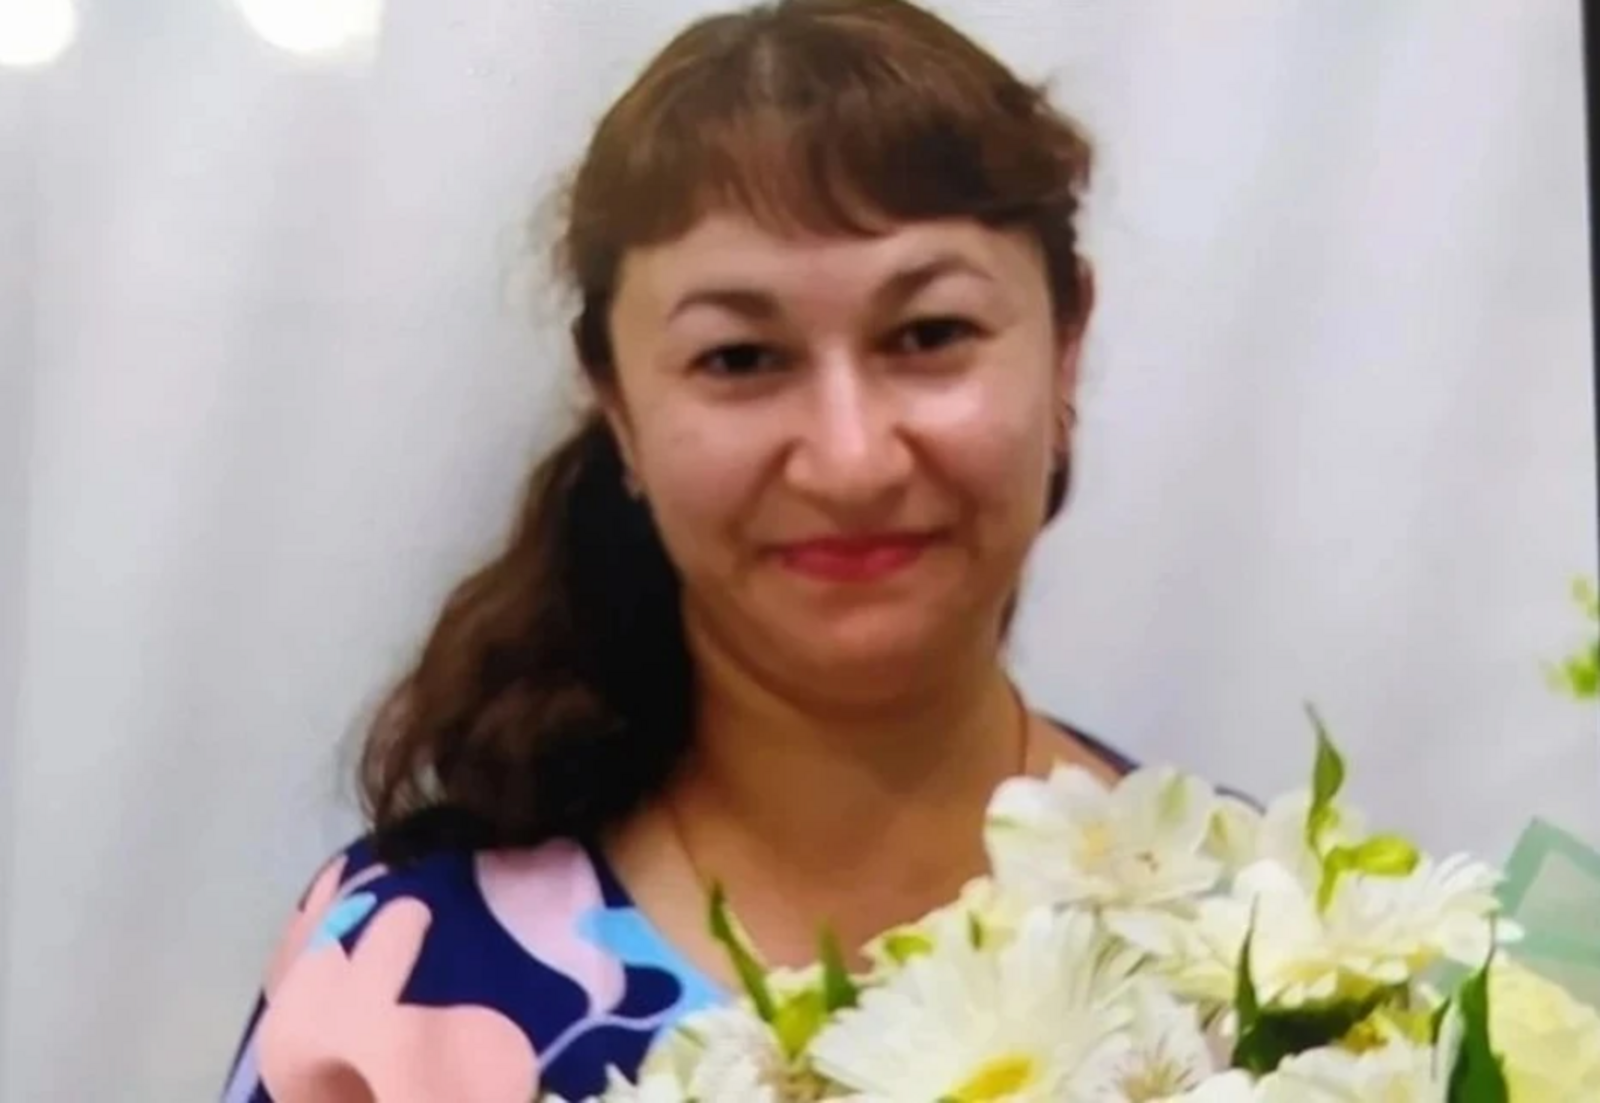 "Вышла в магазин и не вернулась": суд раскрыл детали убийства пропавшей жительницы Башкирии